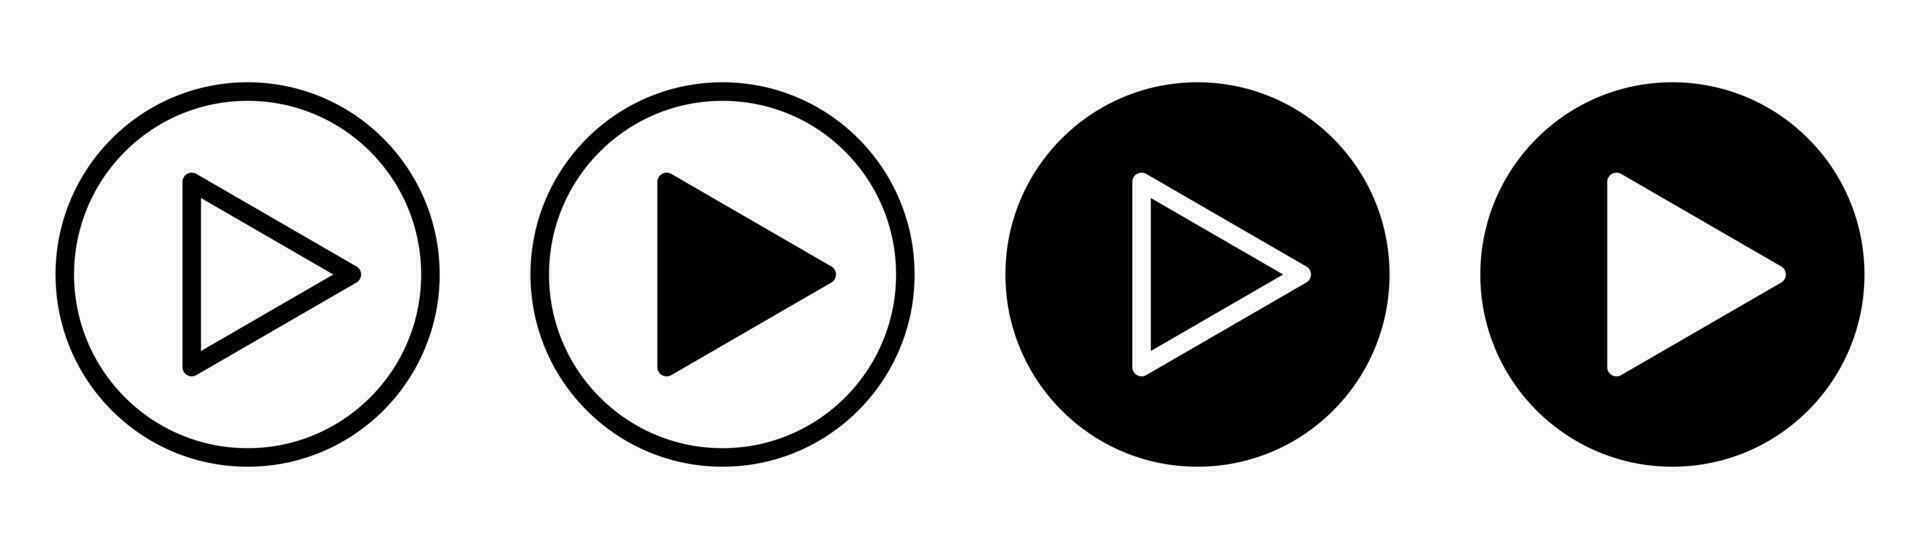 Speel knop. media knop verzameling. Speel symbool in lijn en glief. audio teken in cirkel. media icoon verzameling. voorraad vector illustratie